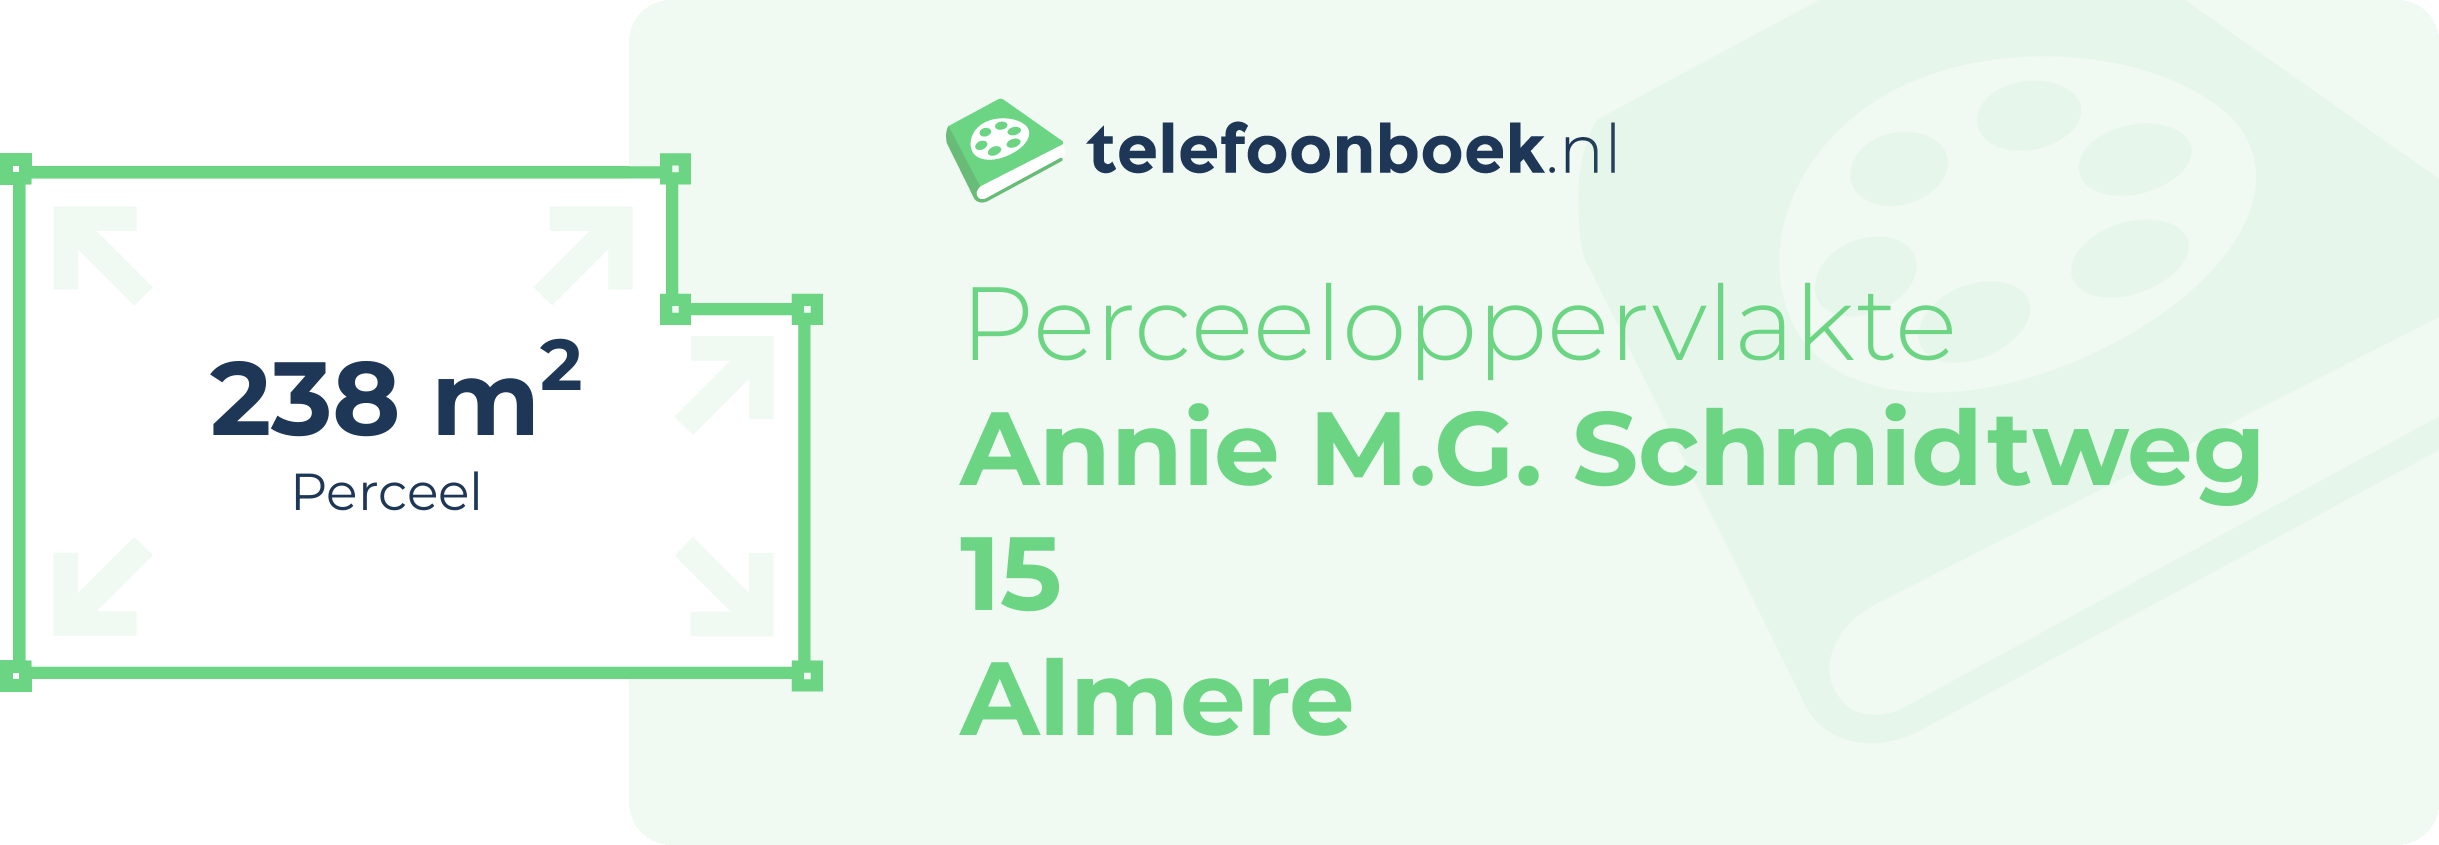 Perceeloppervlakte Annie M.G. Schmidtweg 15 Almere